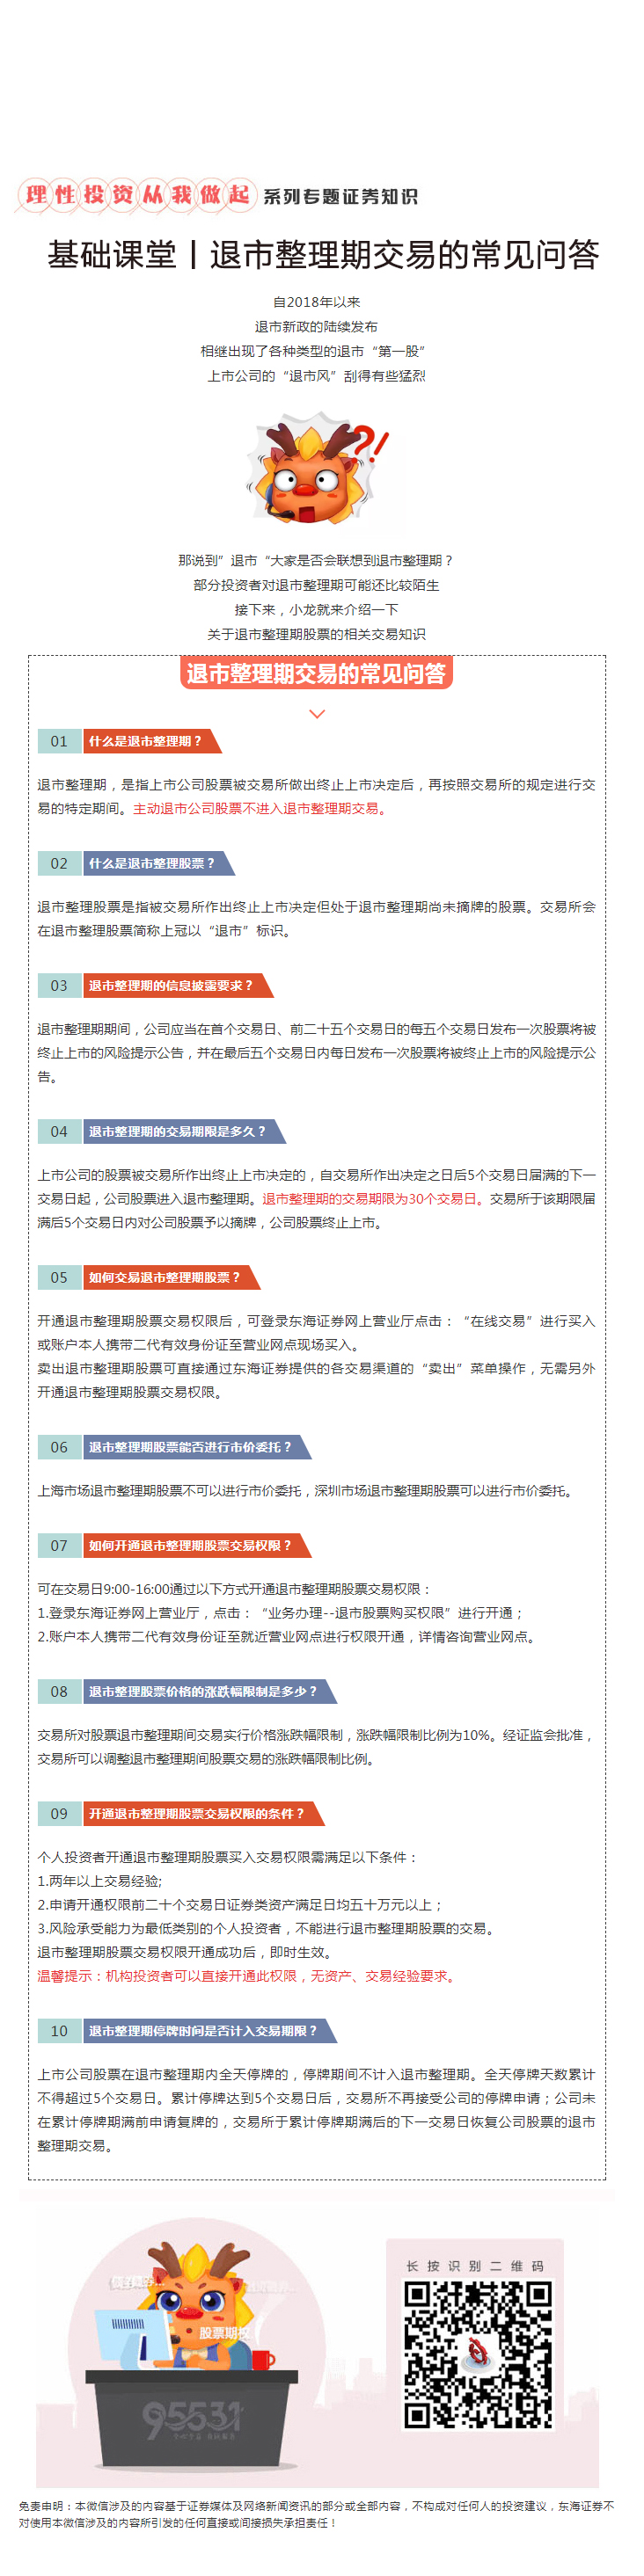 20190118-张婷-基础课堂丨退市整理期交易的常见问答.jpg